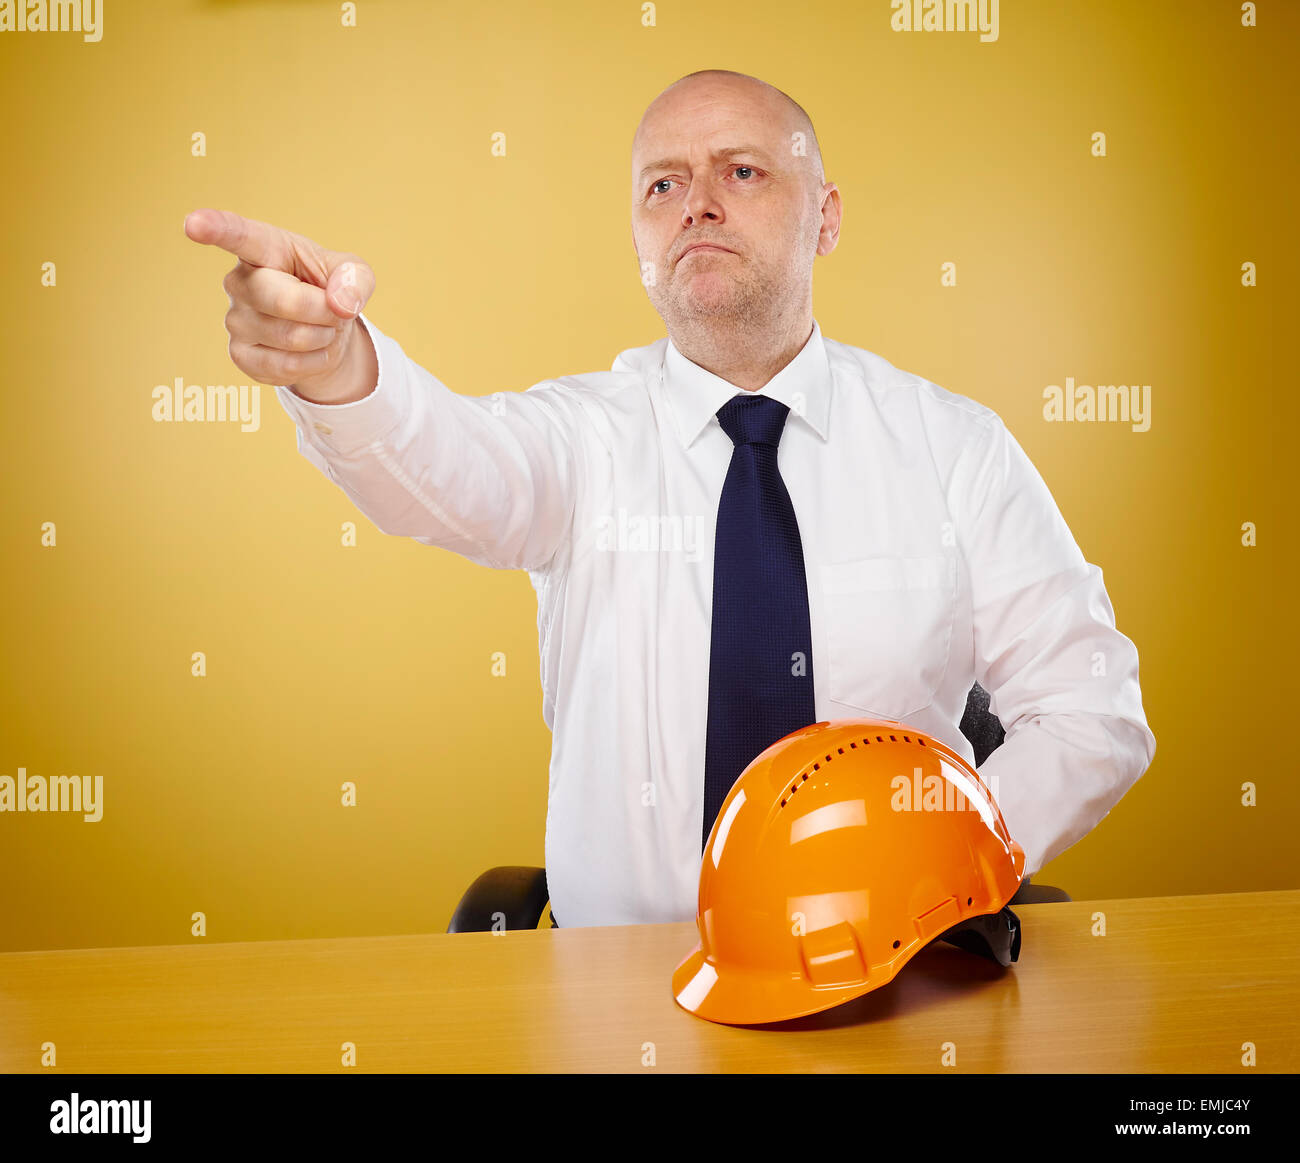 Ingegnere maschio in ufficio egli indossa una camicia bianca e cravatta, orange elmetto è sul tavolo Foto Stock